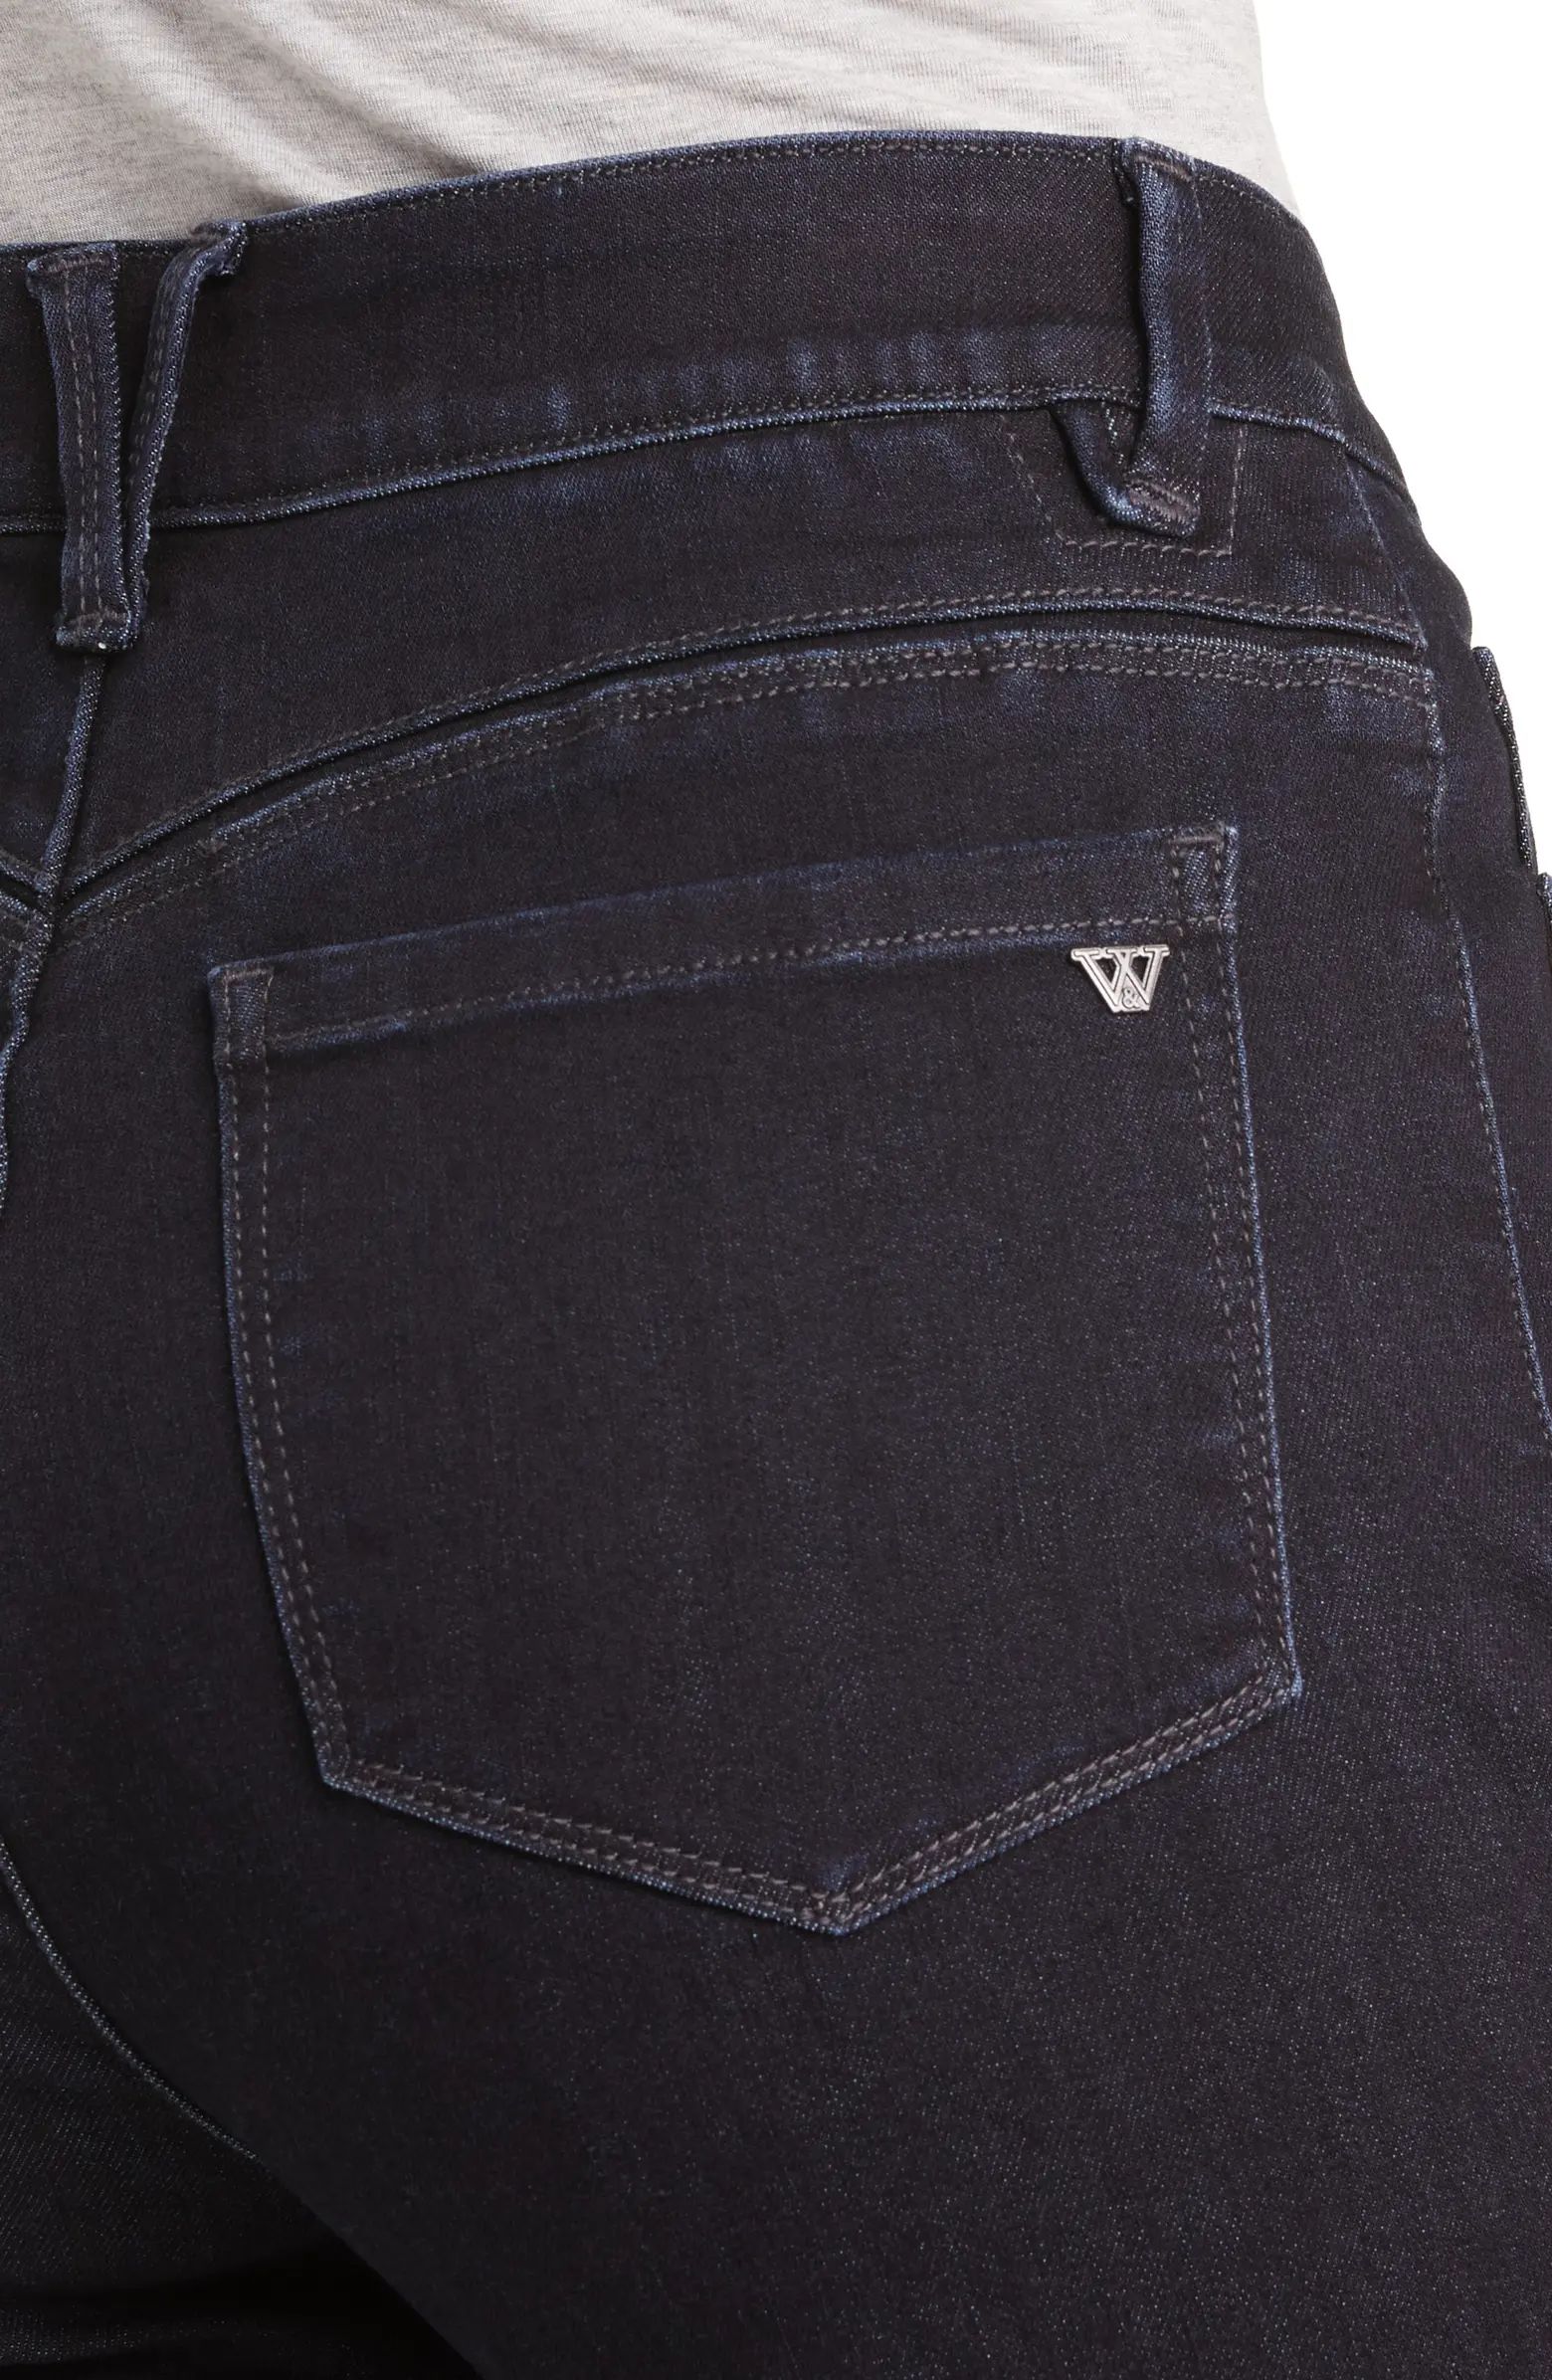 Wit & Wisdom 'Ab'Solution Skyrise Wide Leg Jeans | Nordstrom | Nordstrom